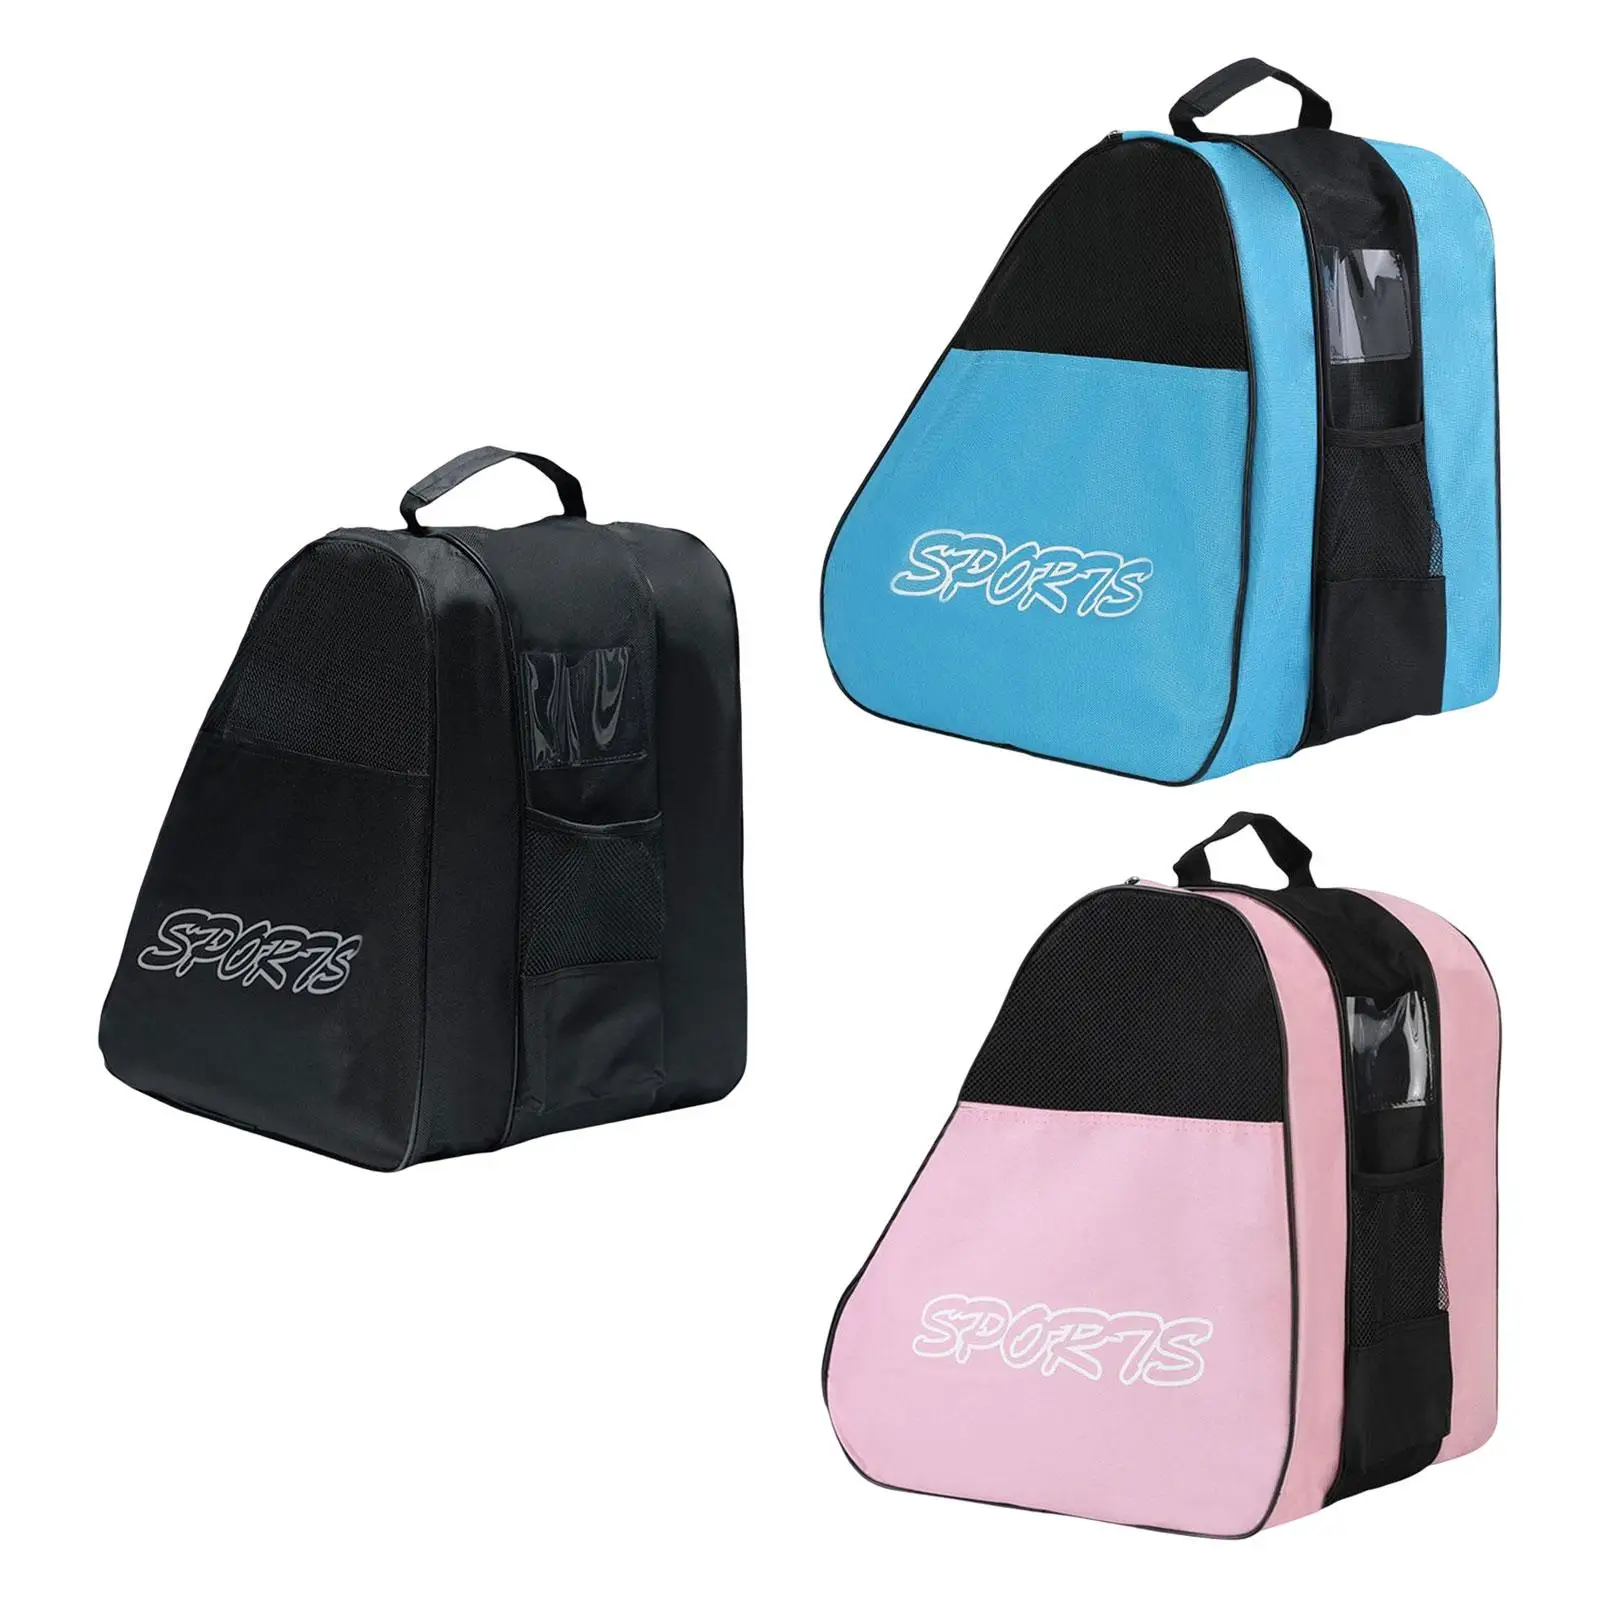 3Pcs Portable Roller Skates Bag, Ice Skating Bag, Handbags Skates Storage Bag, Adjustable Shoulder Strap Skating Shoes Bag